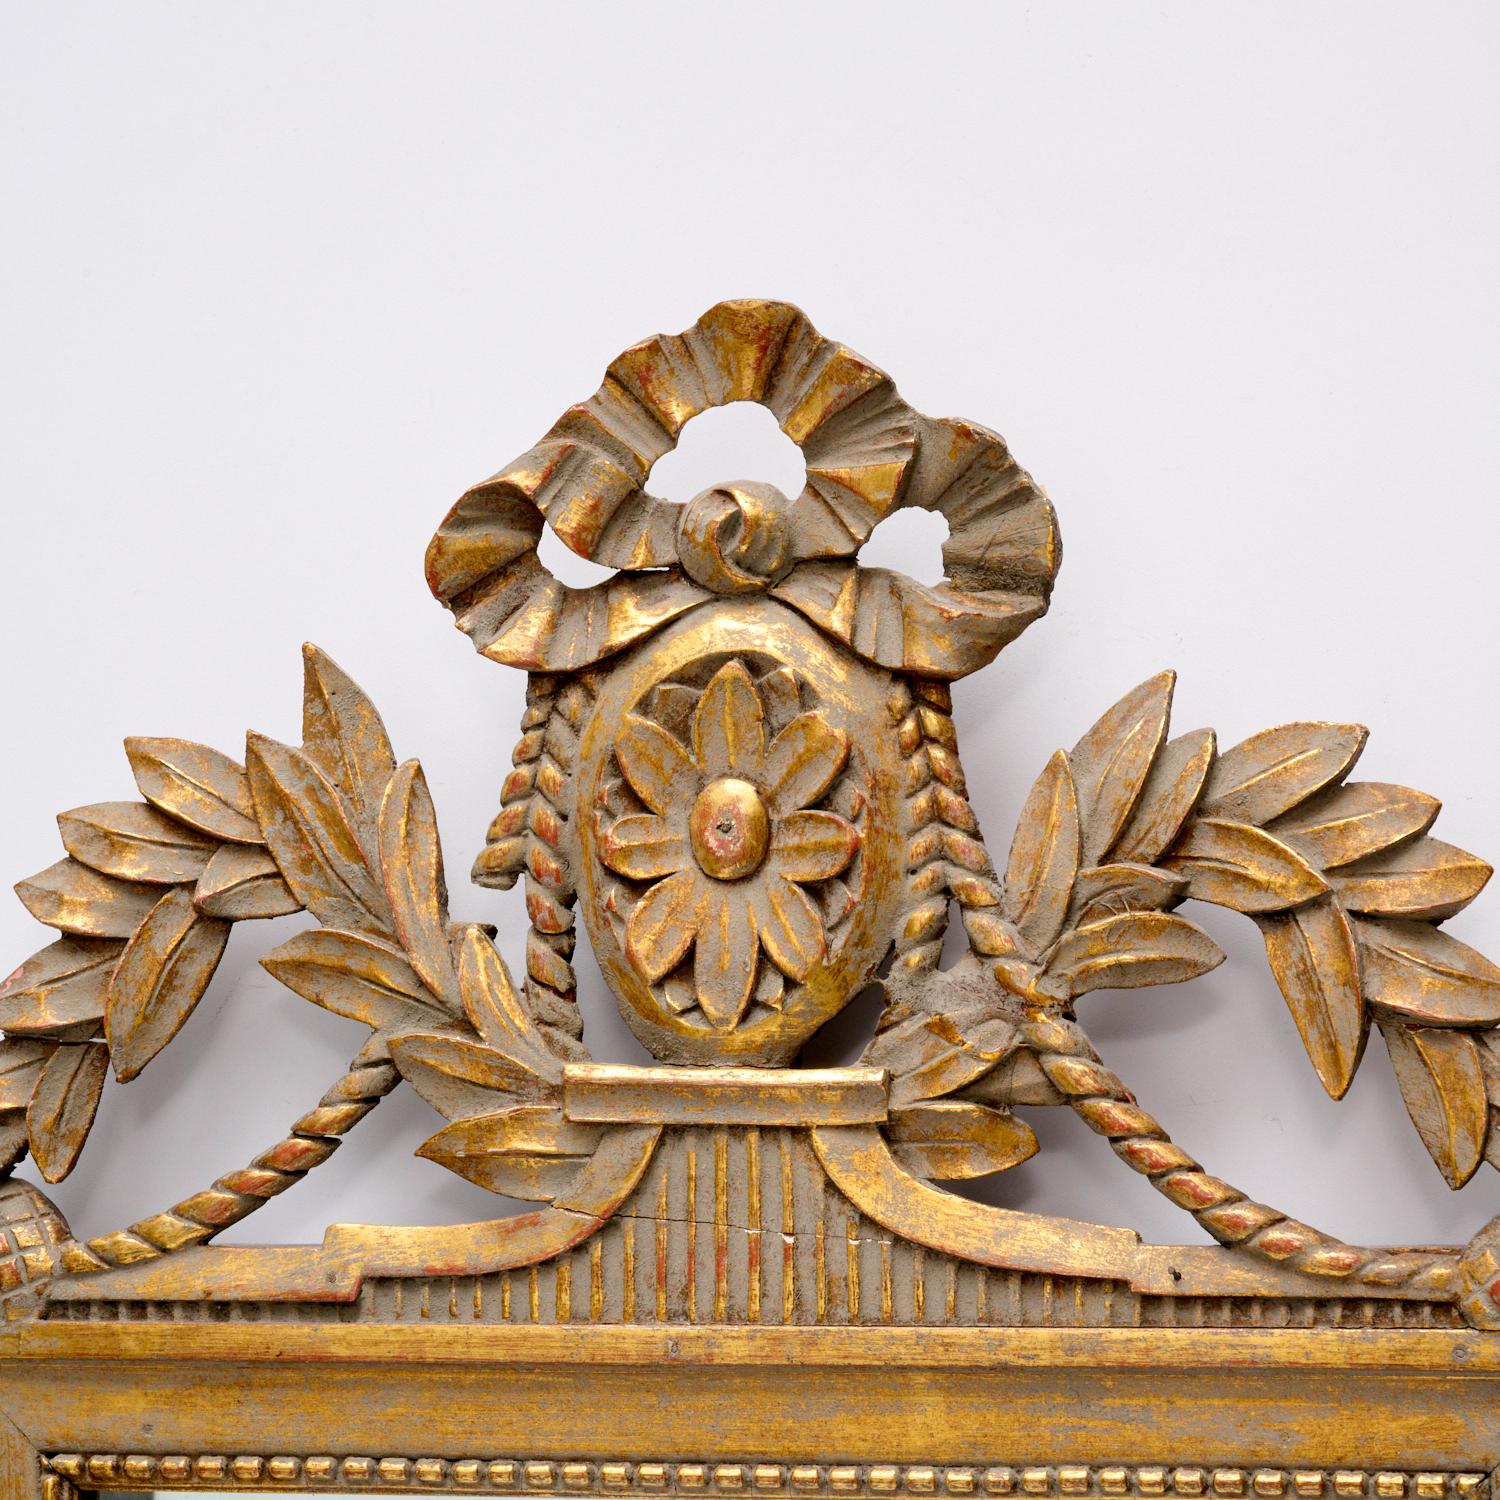 Ein charmanter vergoldeter Brautspiegel im Louis XVI-Stil aus dem späten 19. Jh., verziert mit floralen Motiven und einer Bandkrone.

Ein Brautspiegel war ein traditionelles Hochzeitsgeschenk, das bis in die griechische Antike zurückreicht. Oft ein